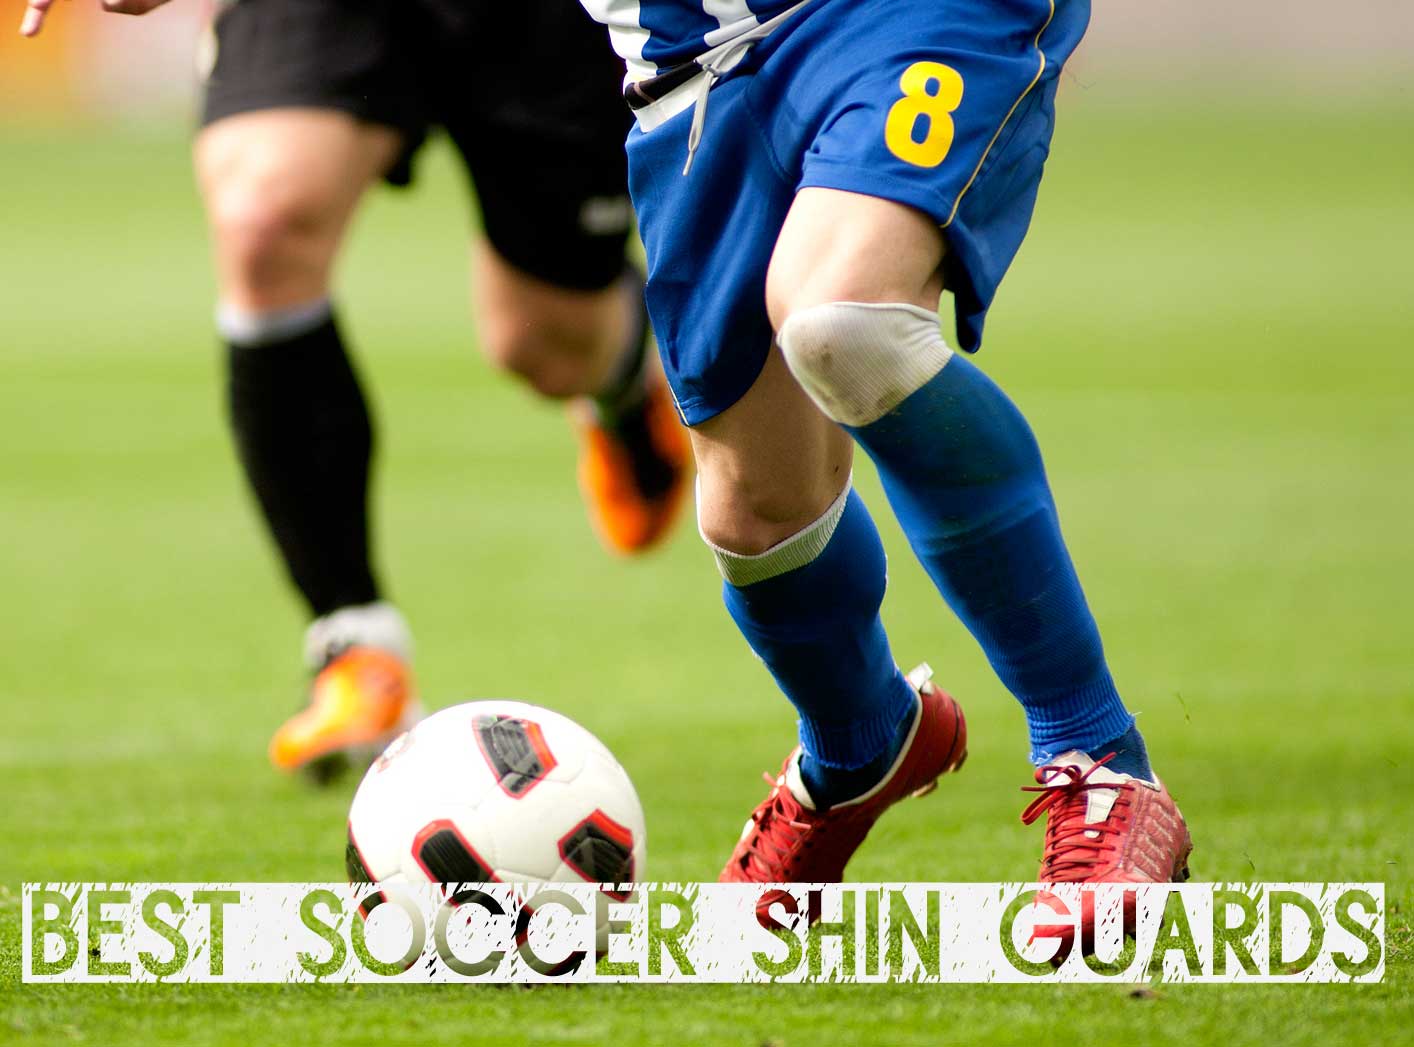 soccer-shin-guards